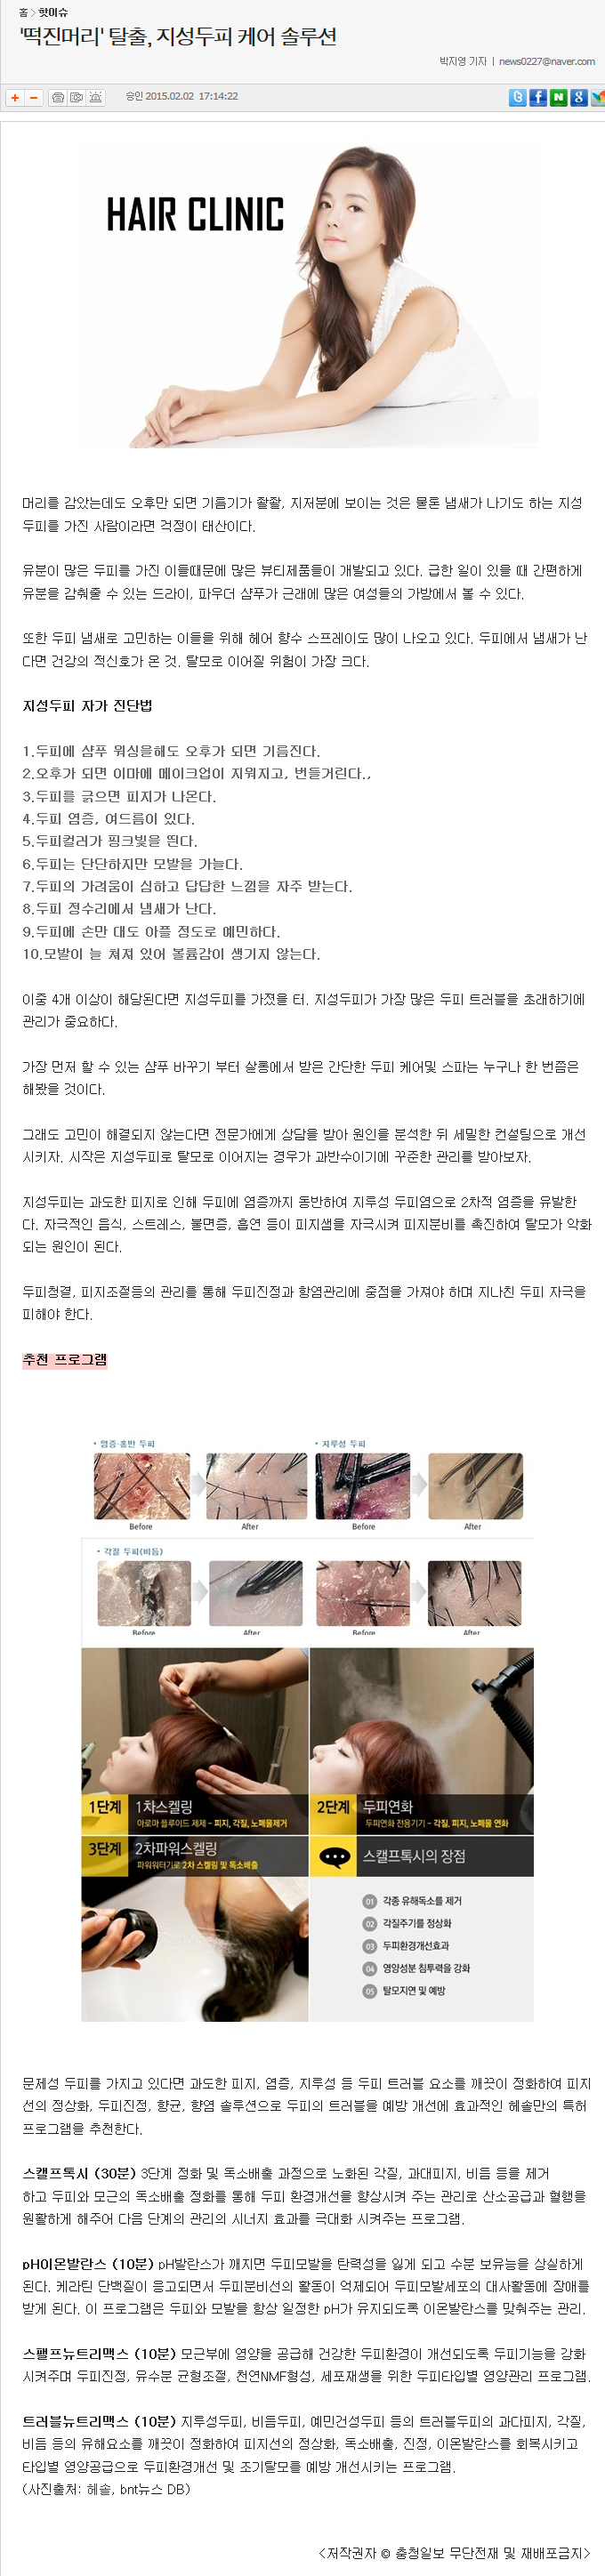 [충청일보-2015.02.02] '떡진머리' 탈출, 지성두피 케어 솔루션